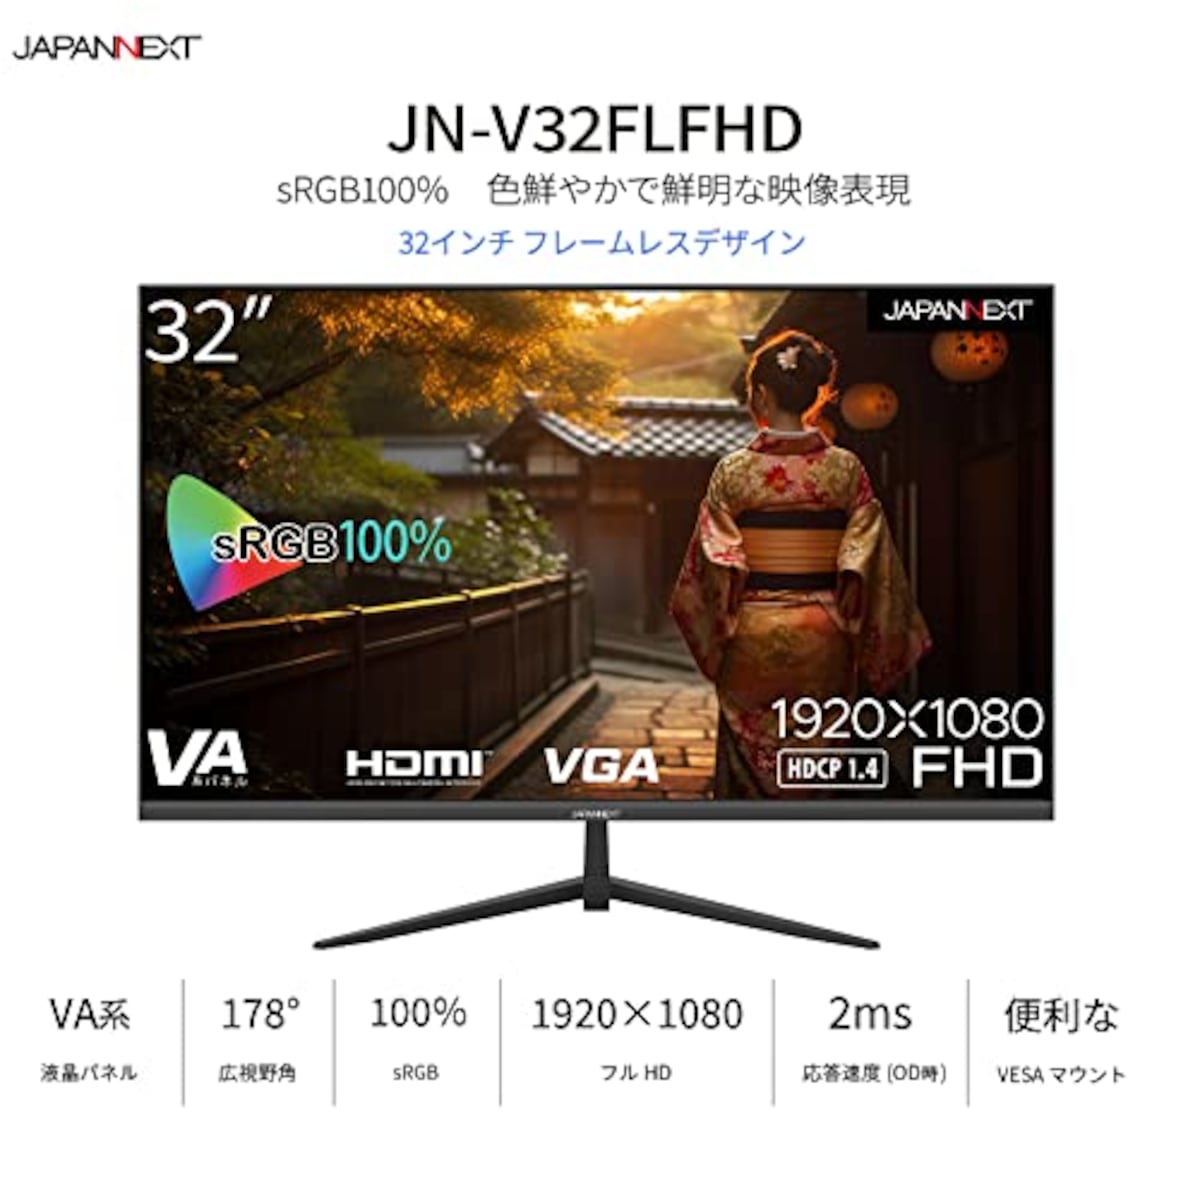  JAPANNEXT 32インチVAパネル搭載 フルHD液晶モニター JN-V32FLFHD HDMI VGA フレームレスデザイン画像3 